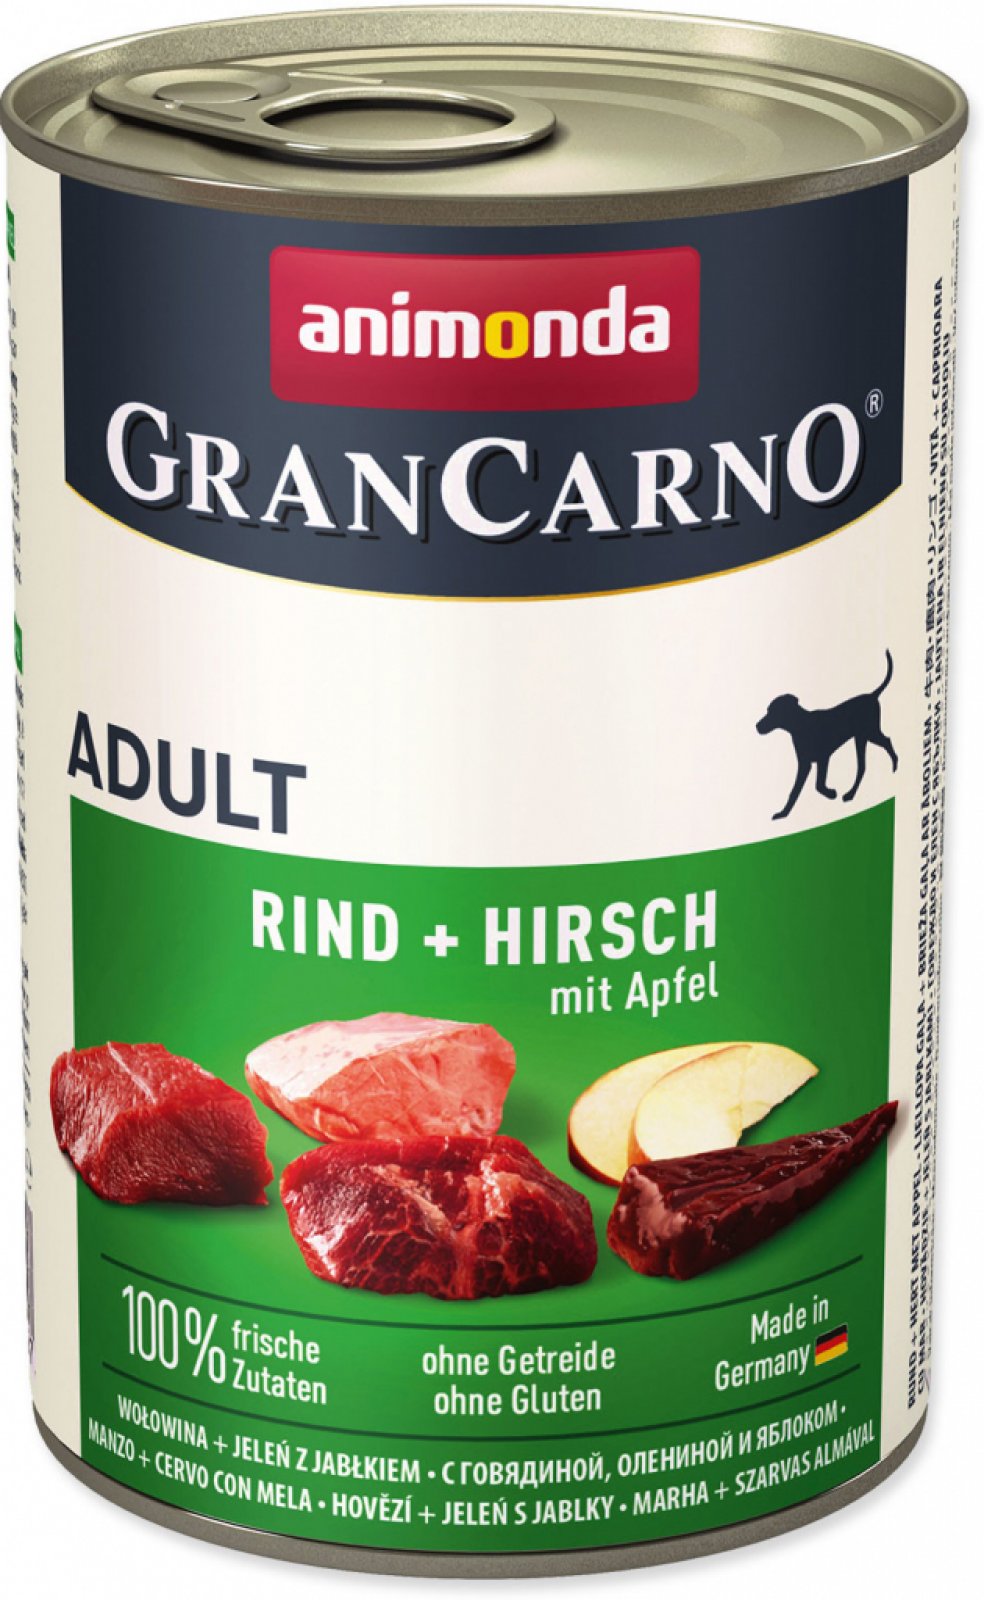 Animonda Gran Carno Adult jelení & jablko 400g